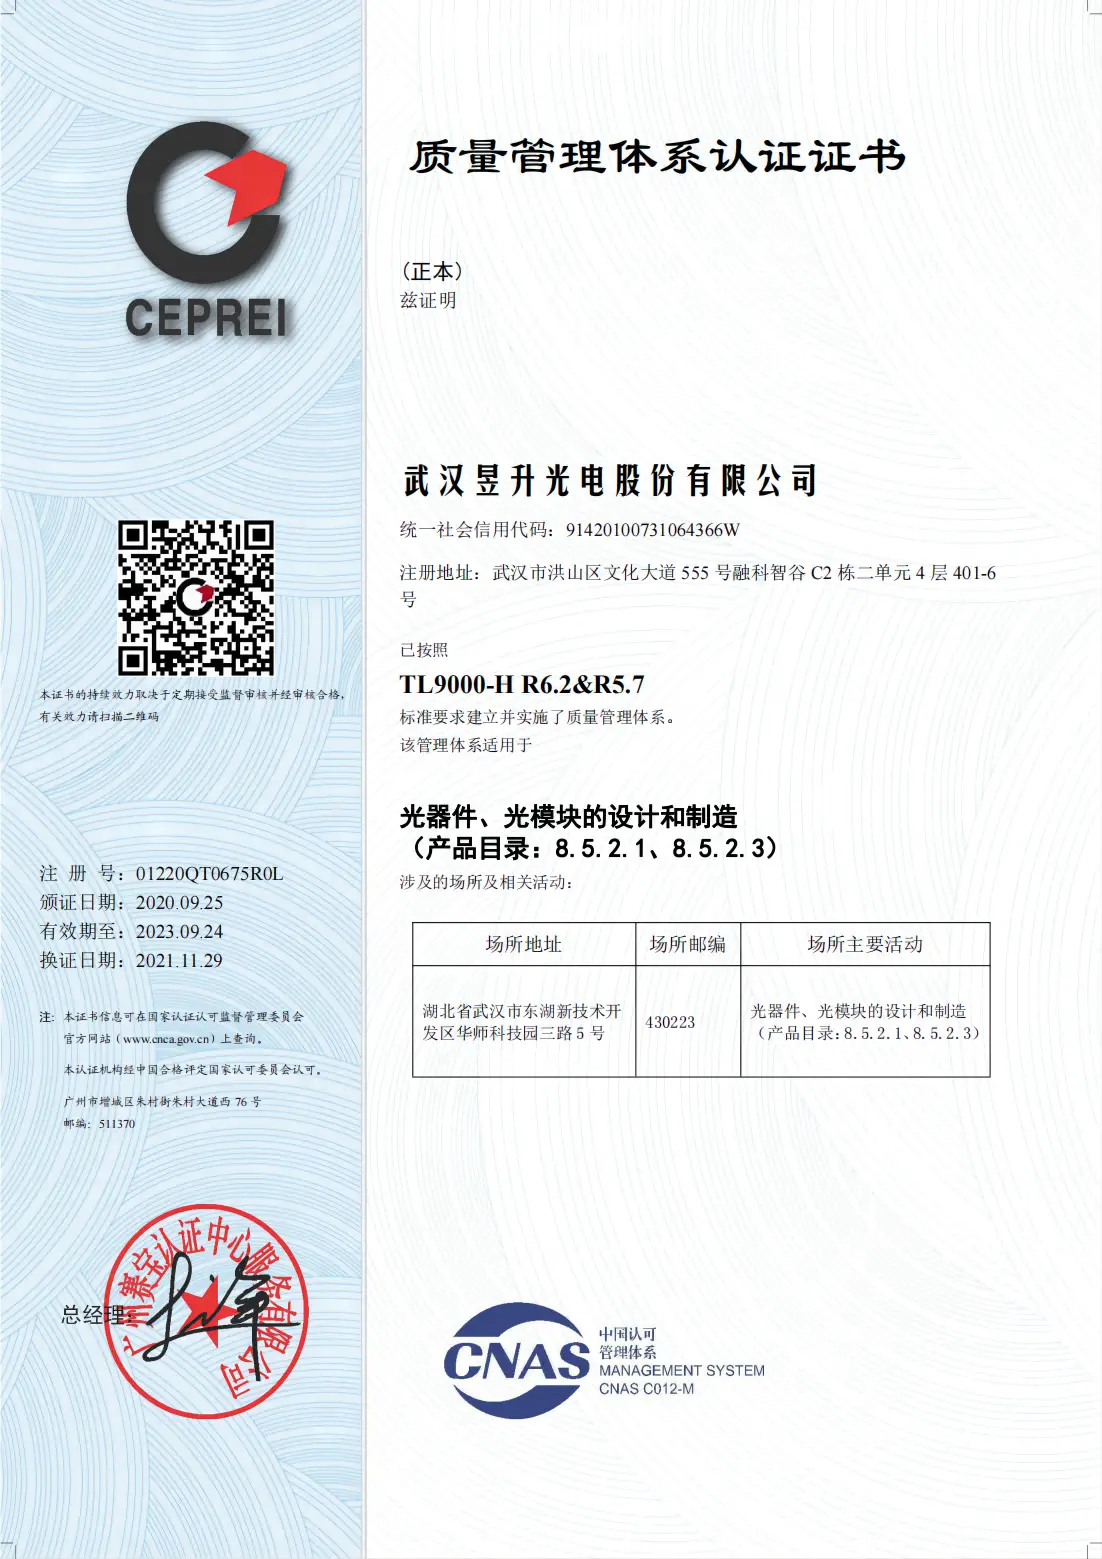 TL9000认证证书-武汉slower 20211129 中_00(1).webp